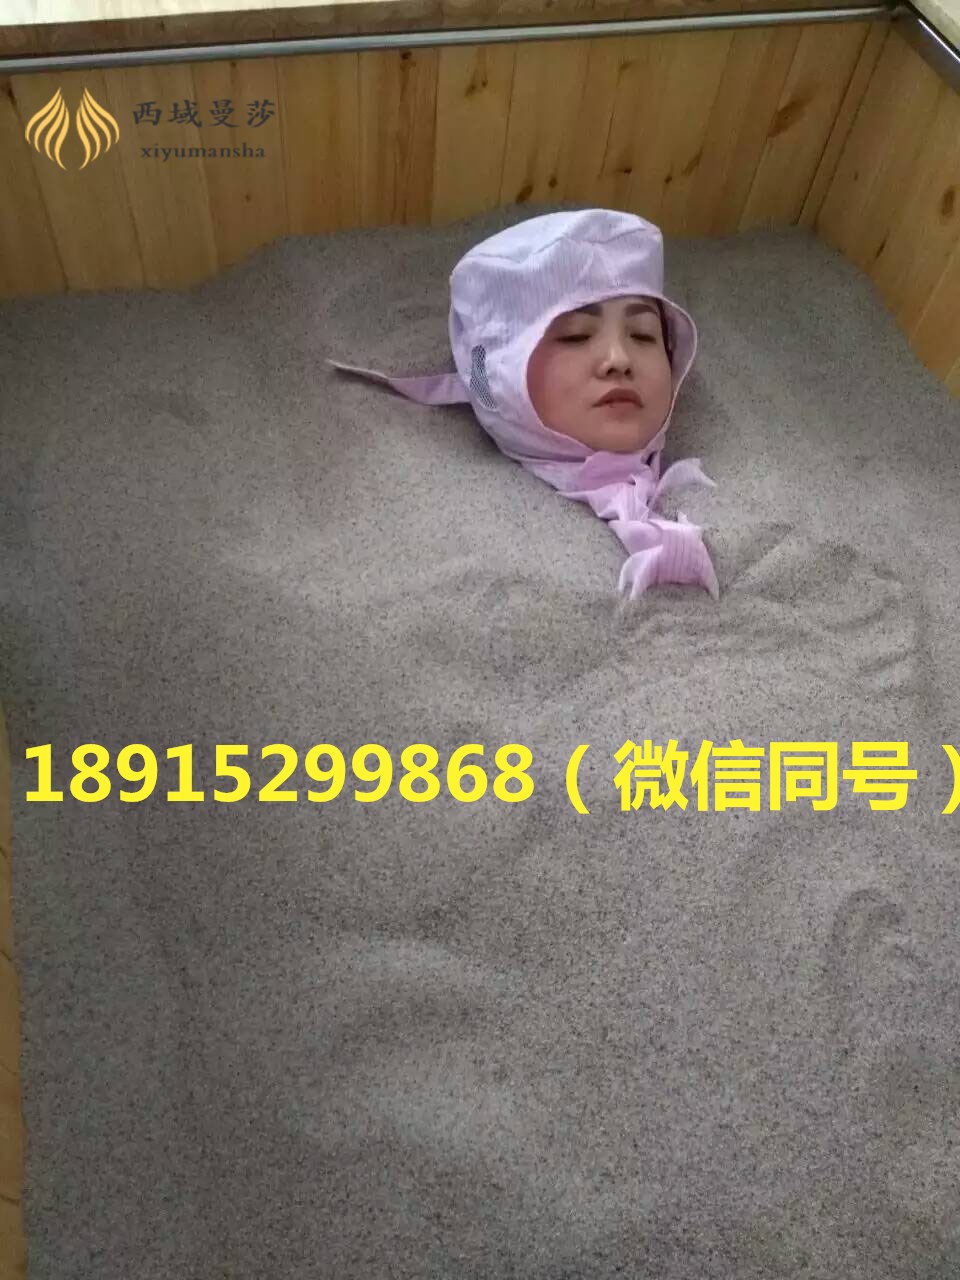 沙疗床价格咨询沙疗加盟沙疗床厂家介绍_1